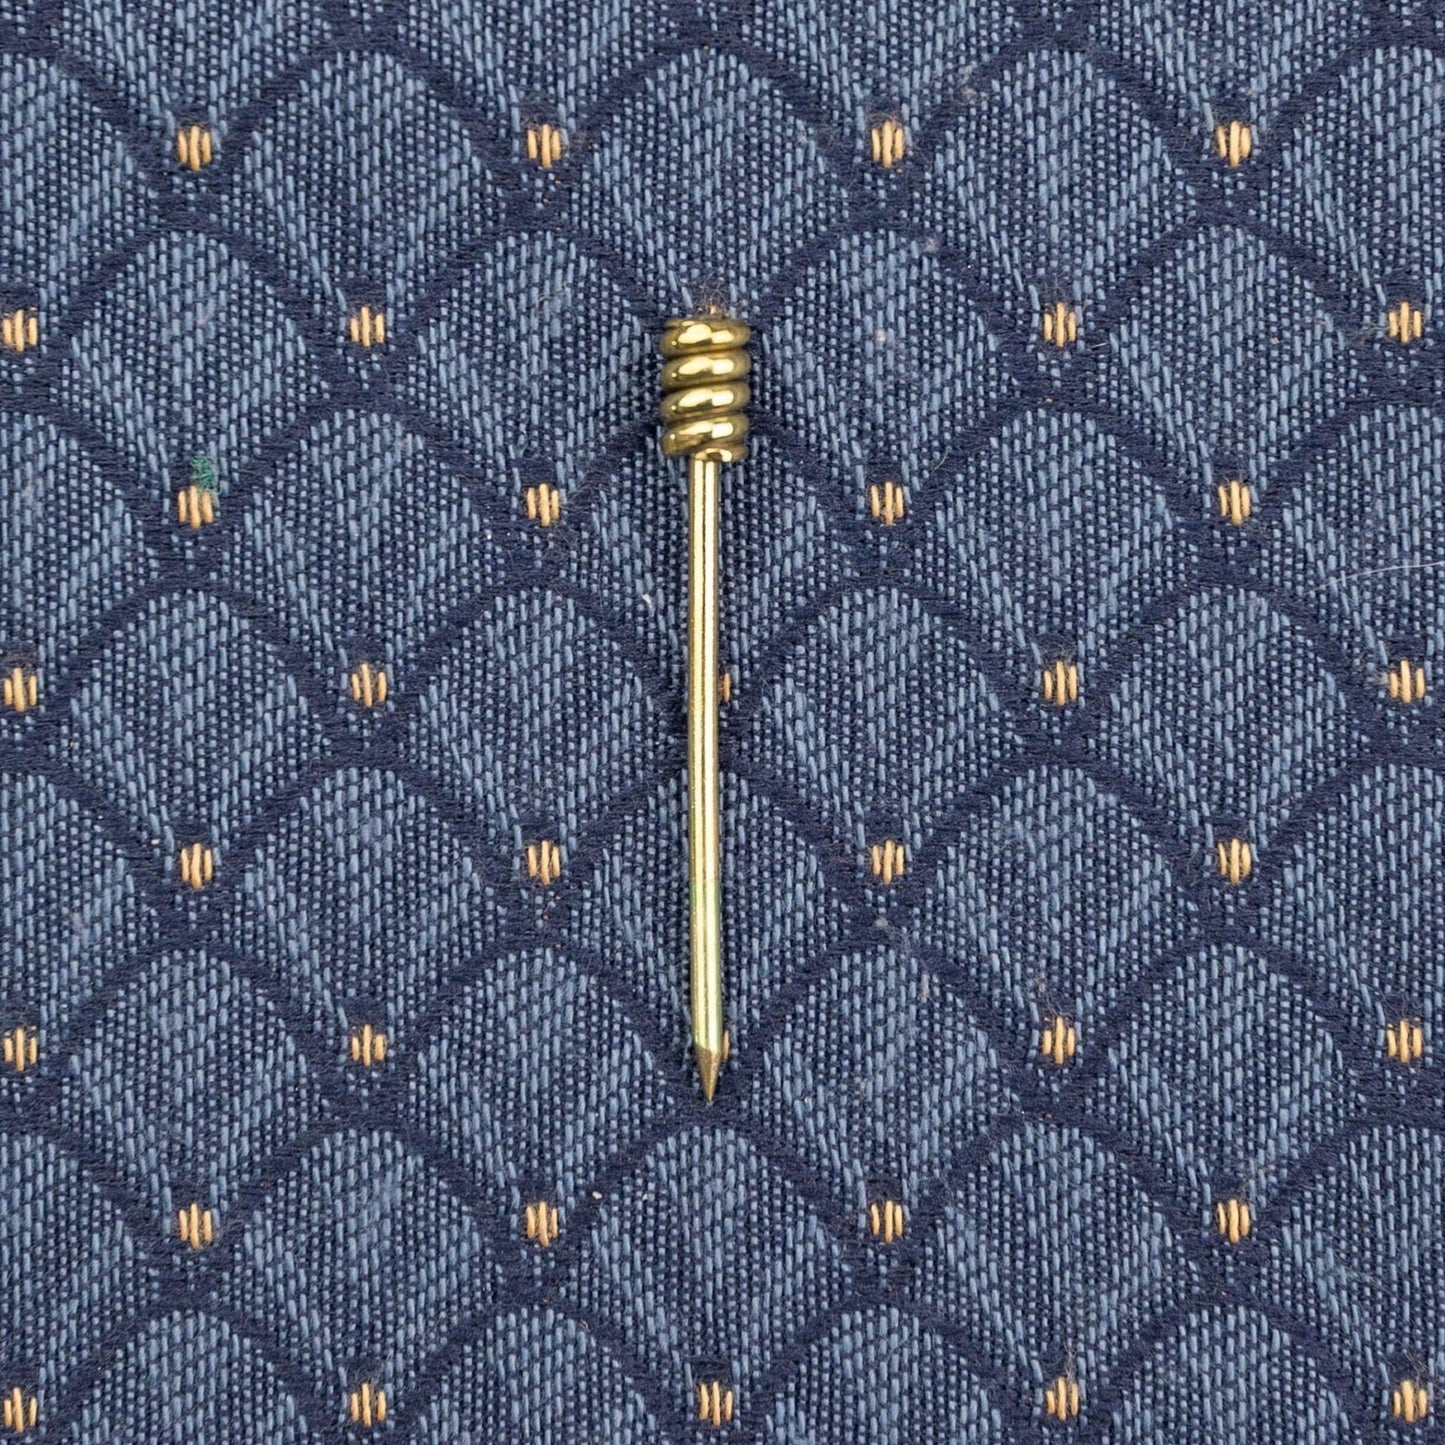 Medieval Veil or Hair Pins (set of 2)